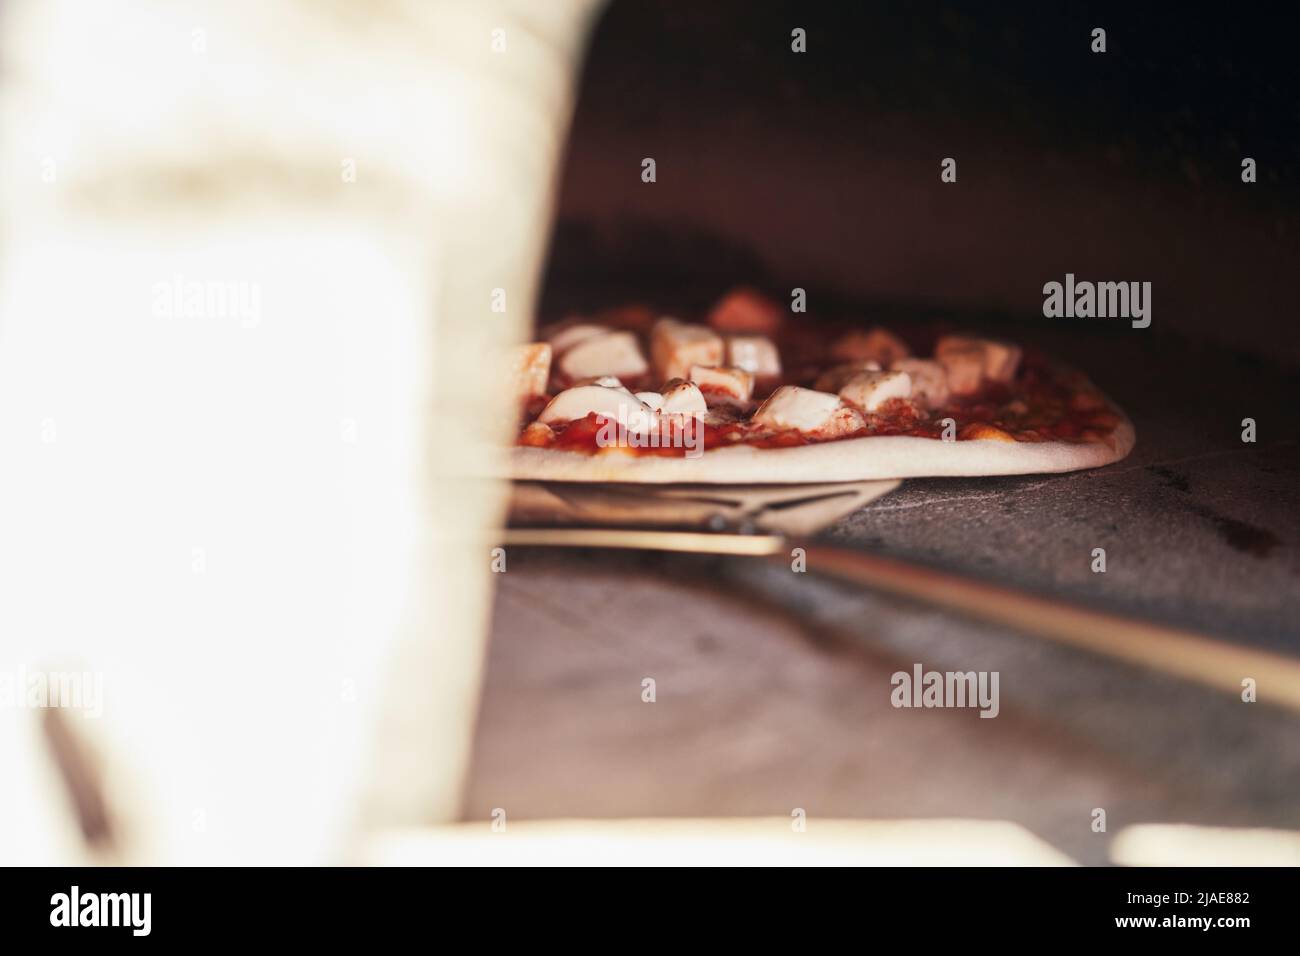 Die Pizza wird zum Backen in einen Holzofen gelegt. Der Prozess der Herstellung von hausgemachter Pizza. Das Konzept der hausgemachten Fast Food. Vorderansicht. Stockfoto